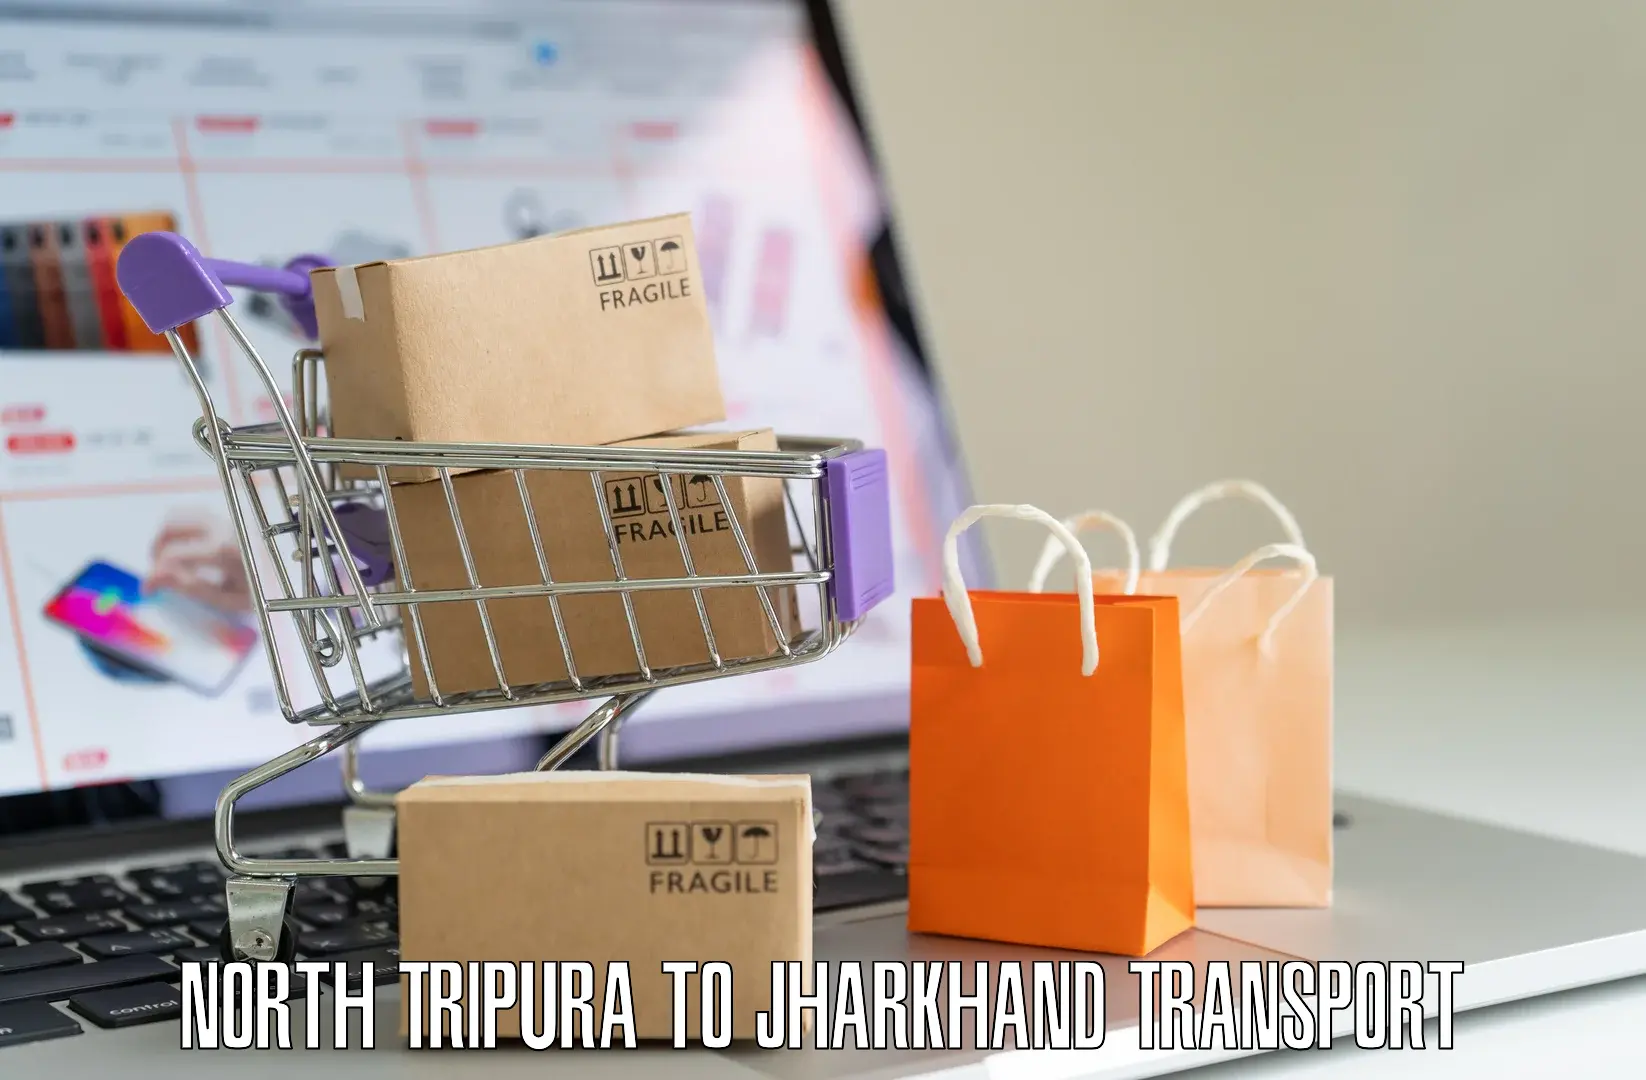 Online transport service North Tripura to NIT Jamshedpur